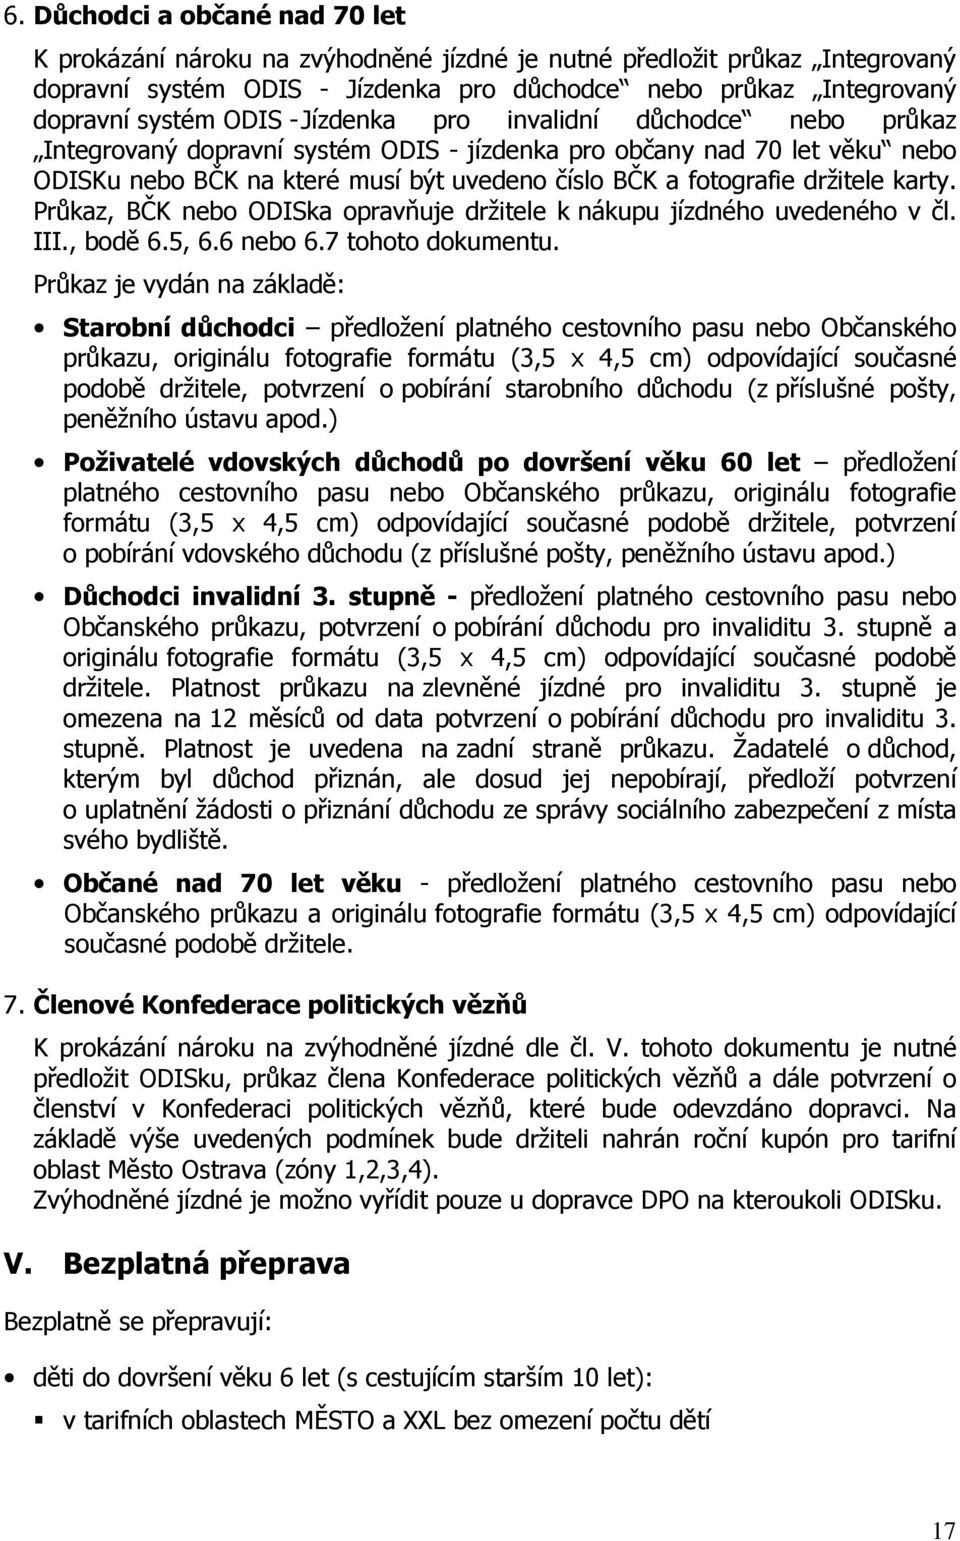 karty. Průkaz, BČK nebo ODISka opravňuje držitele k nákupu jízdného uvedeného v čl. III., bodě 6.5, 6.6 nebo 6.7 tohoto dokumentu.